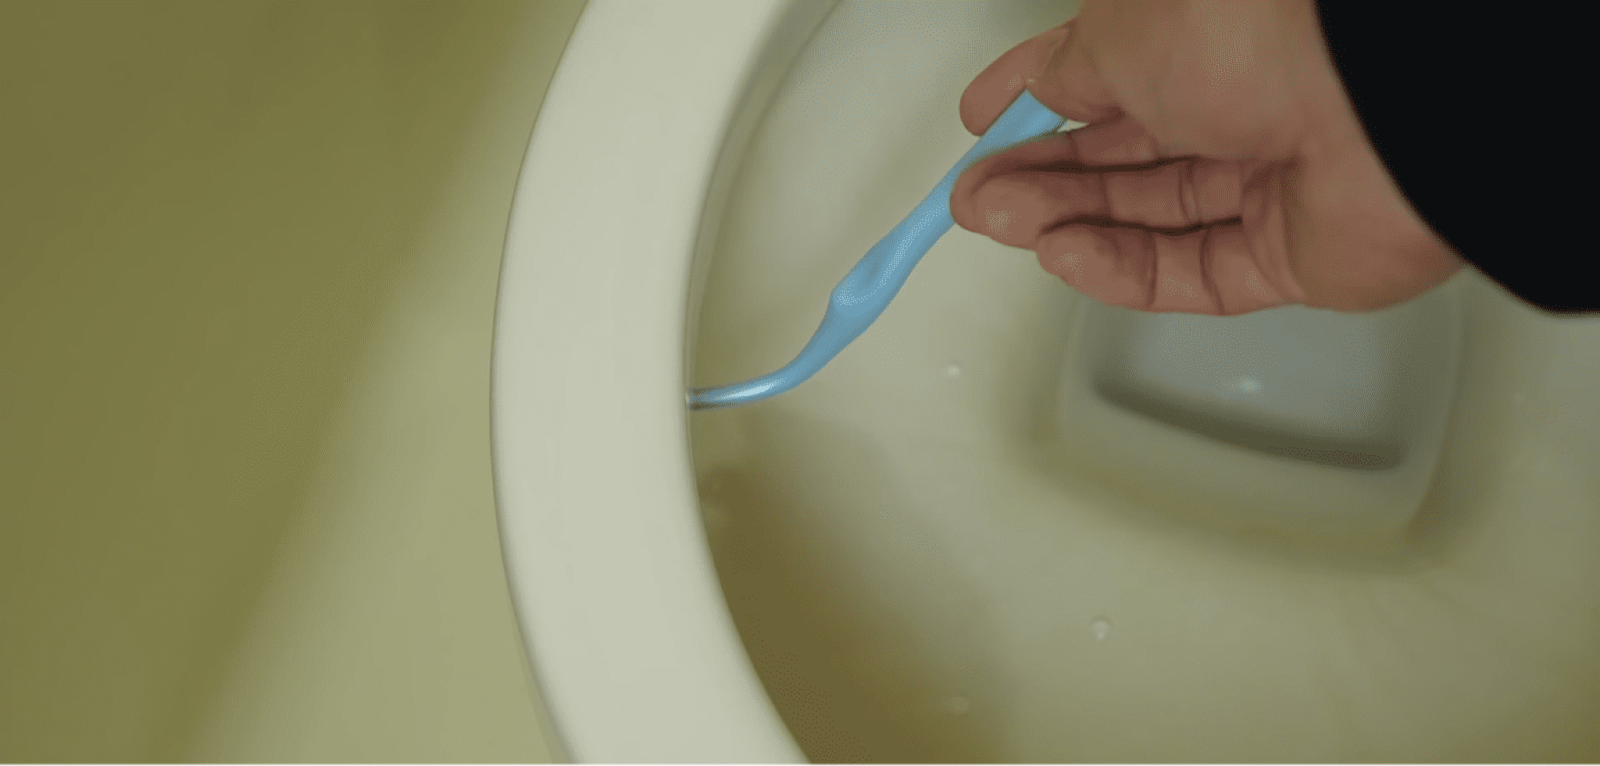 歯ブラシでトイレ掃除をする男性